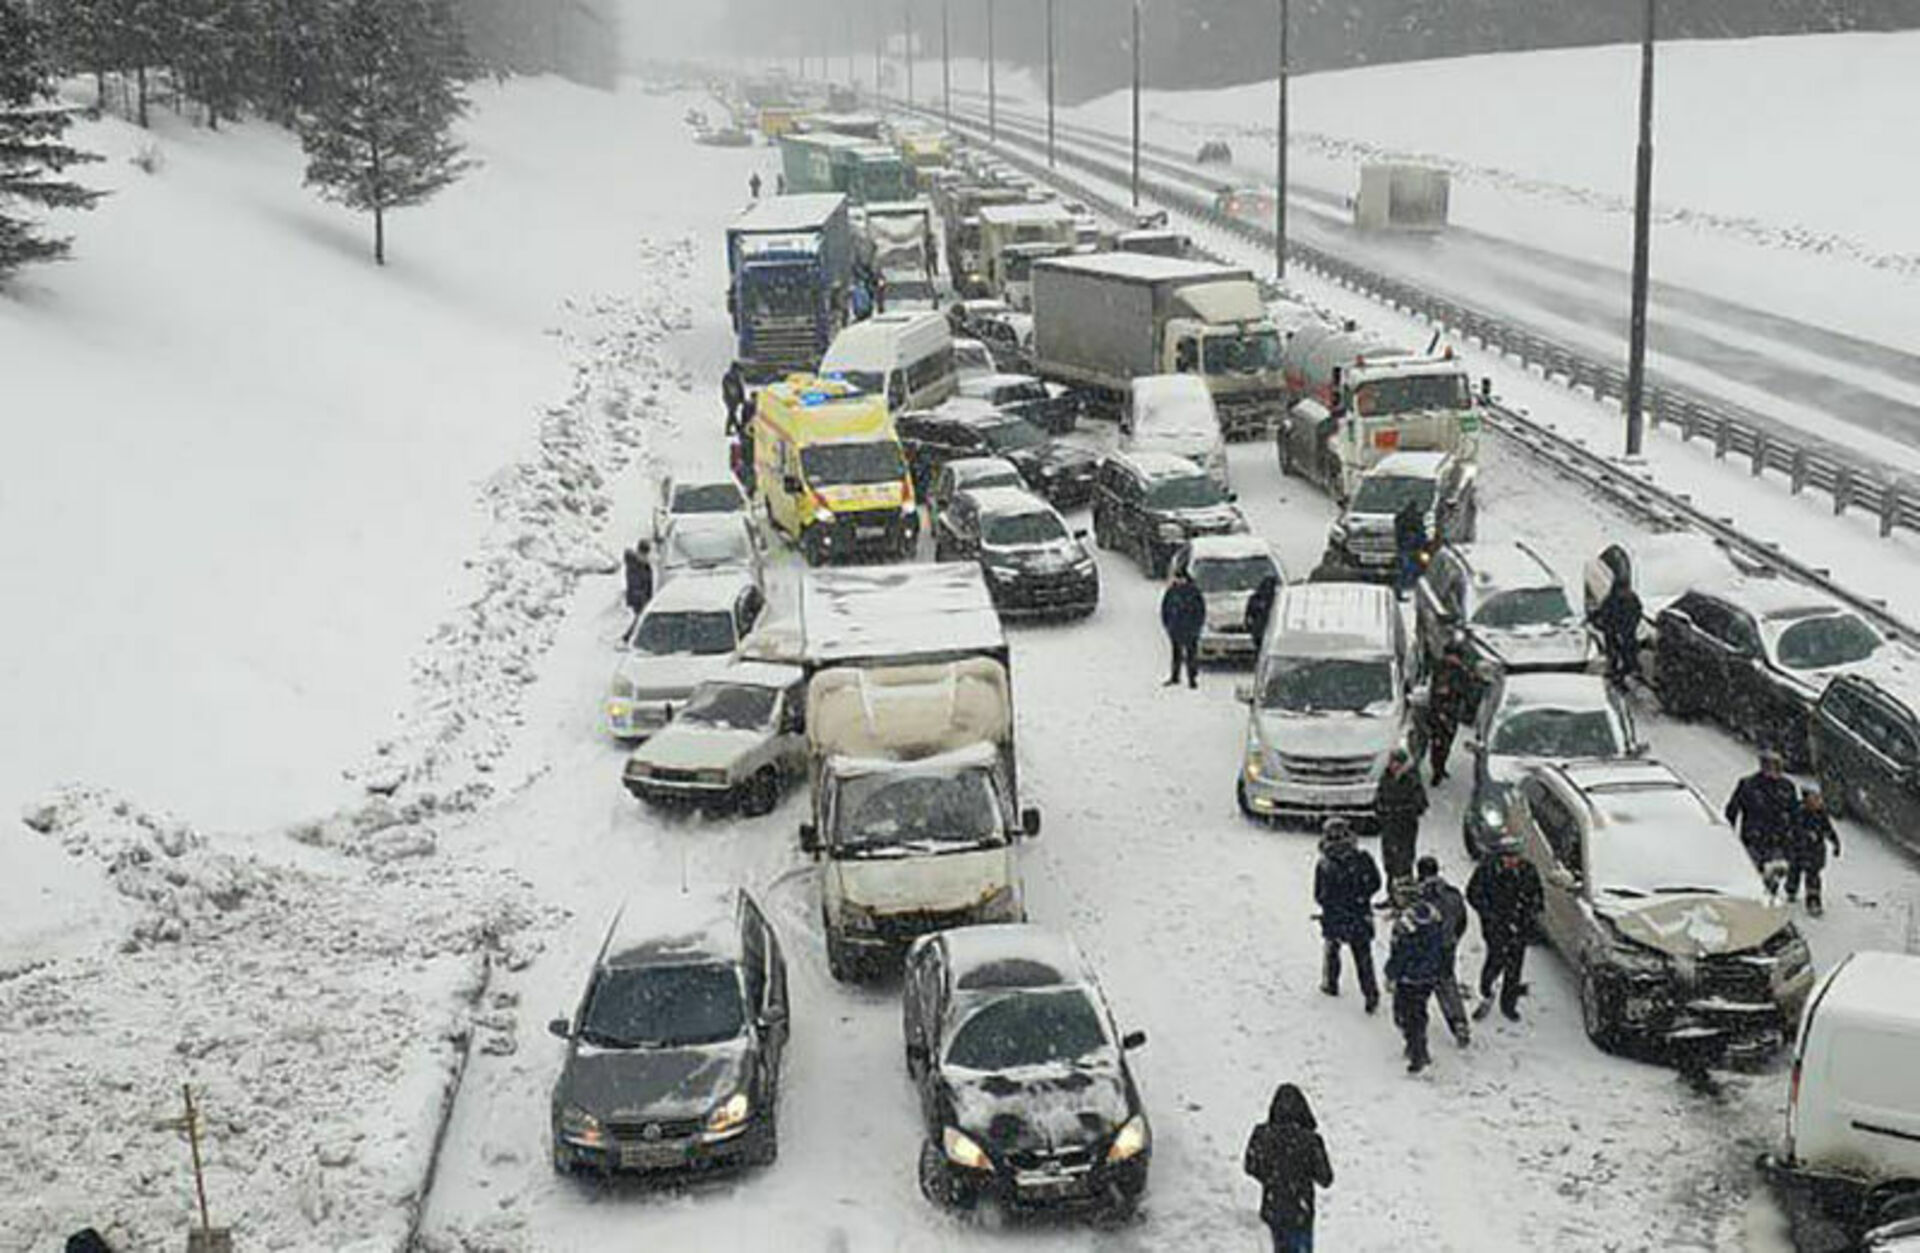 Что творится на дорогах. Массовая авария на Симферопольском шоссе. Дорожная обстановка. Крупные автомобильные катастрофы. Массовая авария зимой на трассе.